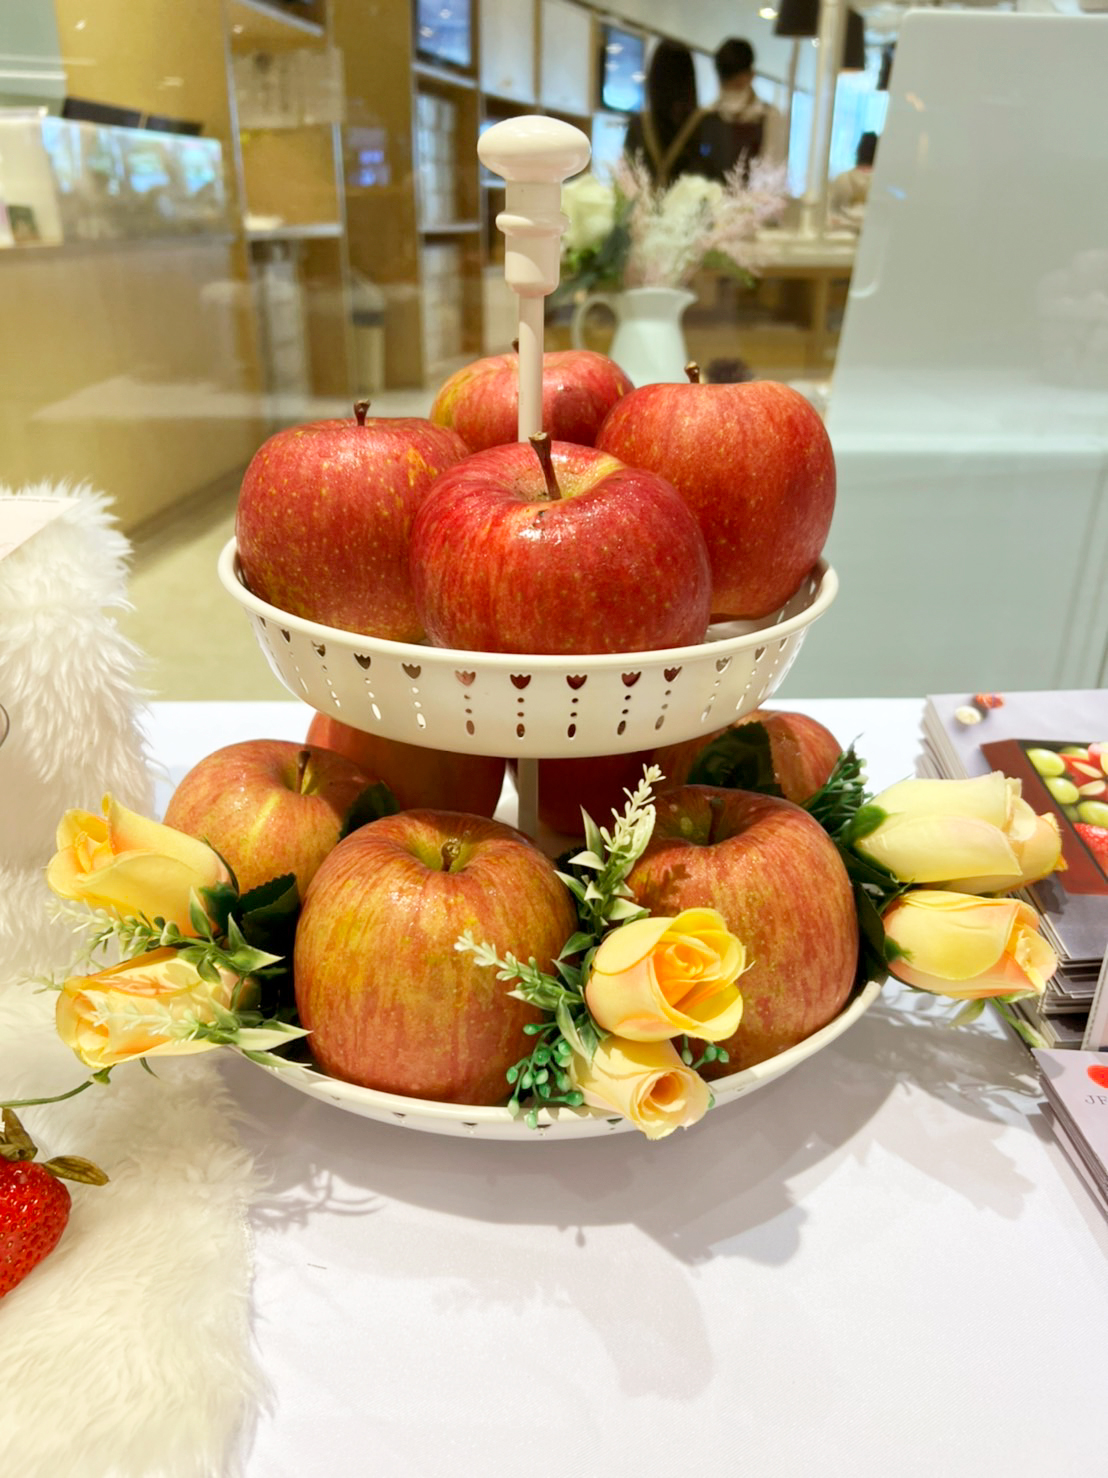 แอปเปิ้ล ซันฟูจิ ABC Cooking Studio ผลไม้นำเข้าจากญี่ปุ่น